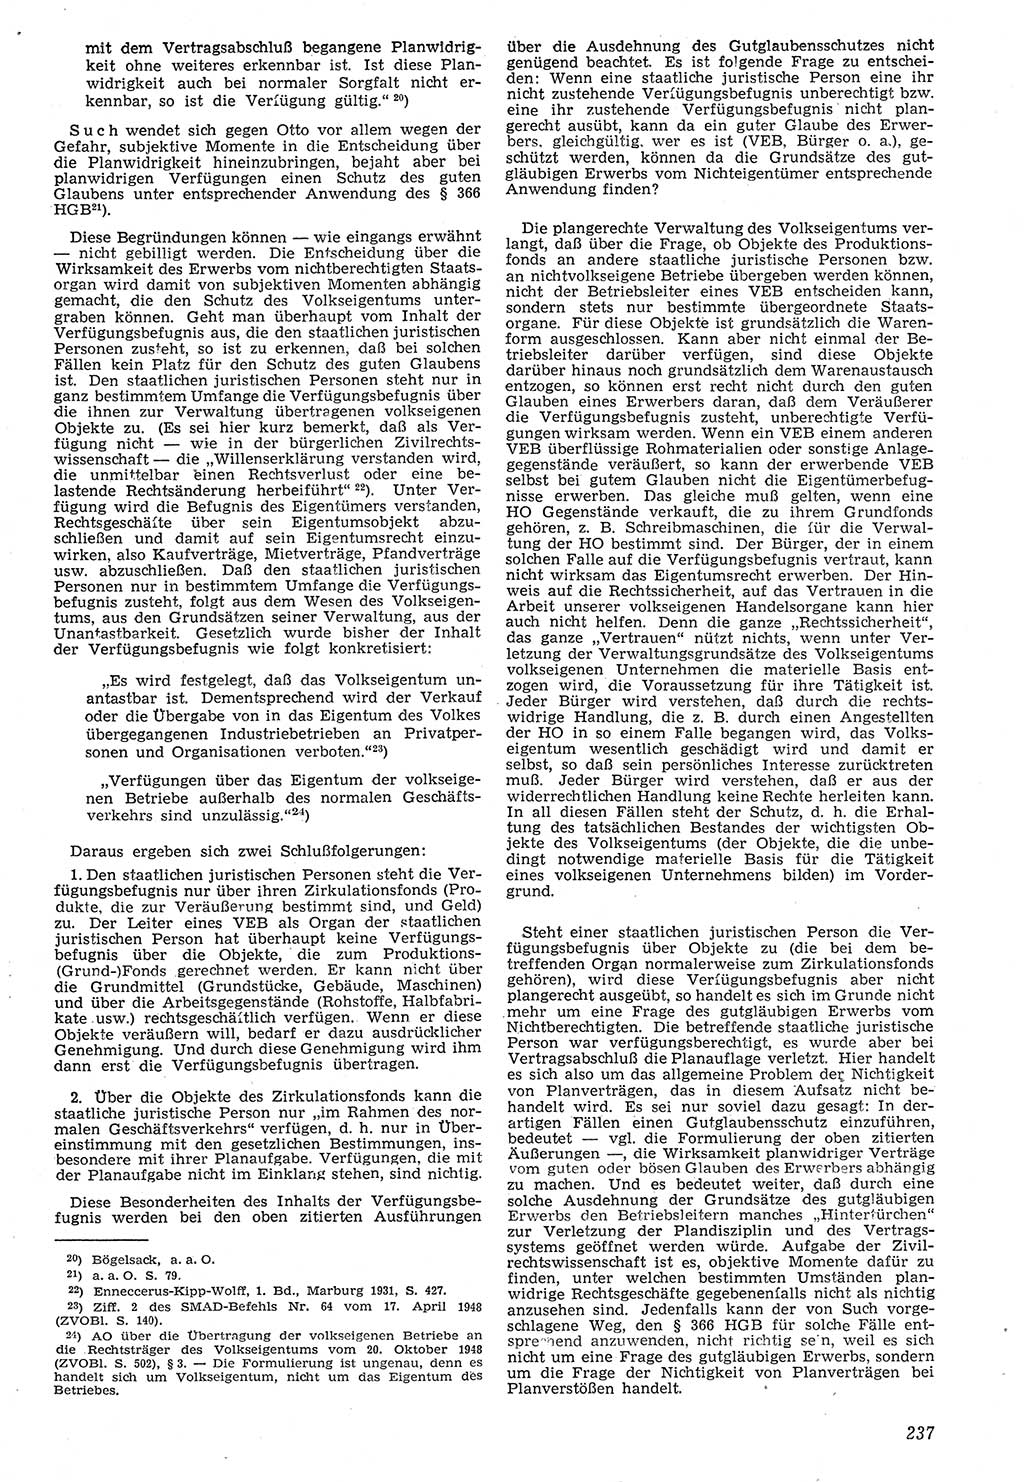 Neue Justiz (NJ), Zeitschrift für Recht und Rechtswissenschaft [Deutsche Demokratische Republik (DDR)], 7. Jahrgang 1953, Seite 237 (NJ DDR 1953, S. 237)